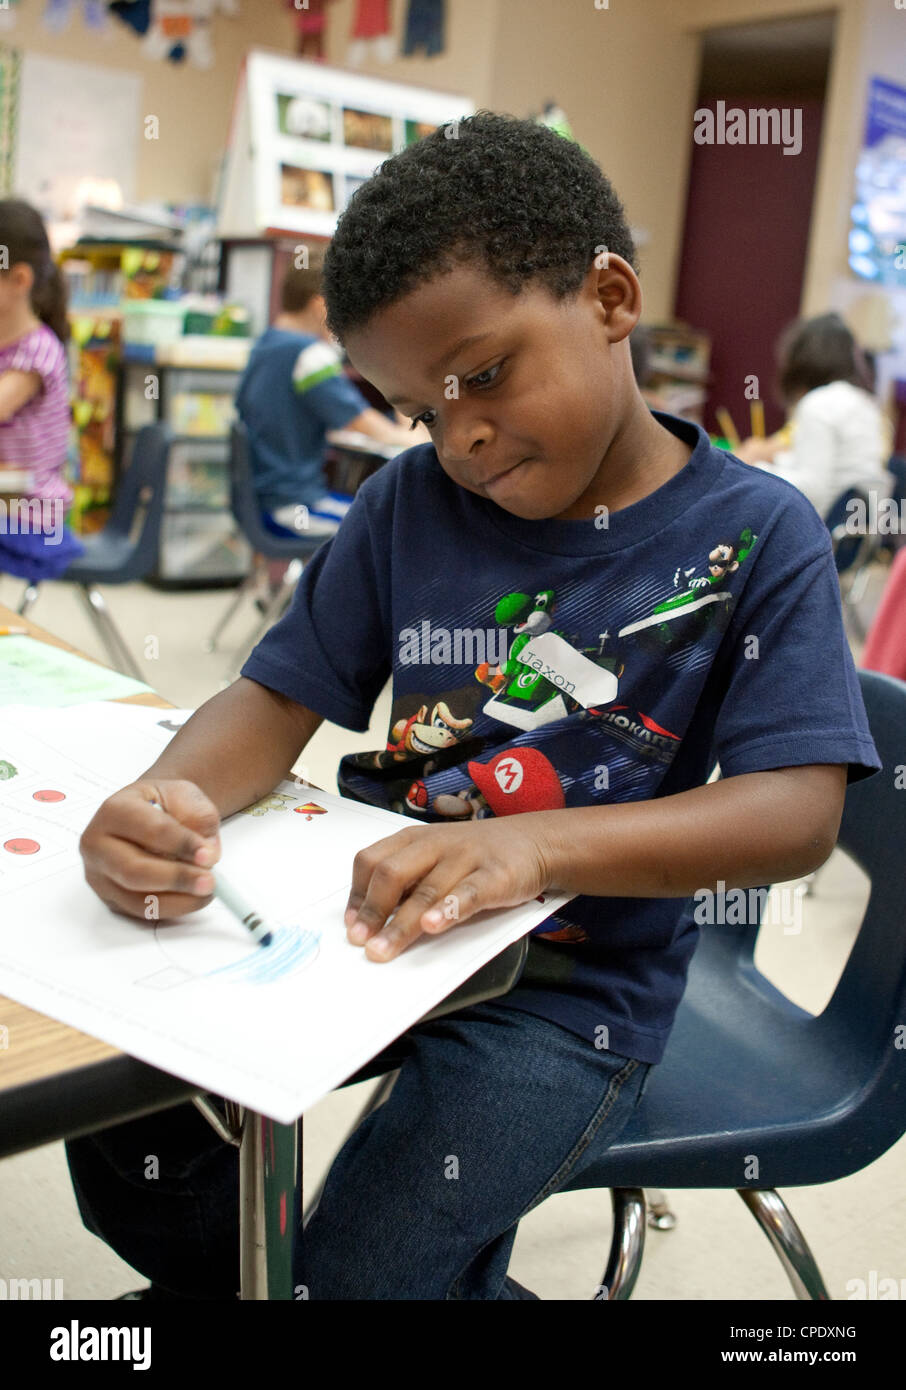 Les hommes afro-américains de la maternelle élève travaille à son bureau pendant la classe à l'école élémentaire publique du Texas Banque D'Images